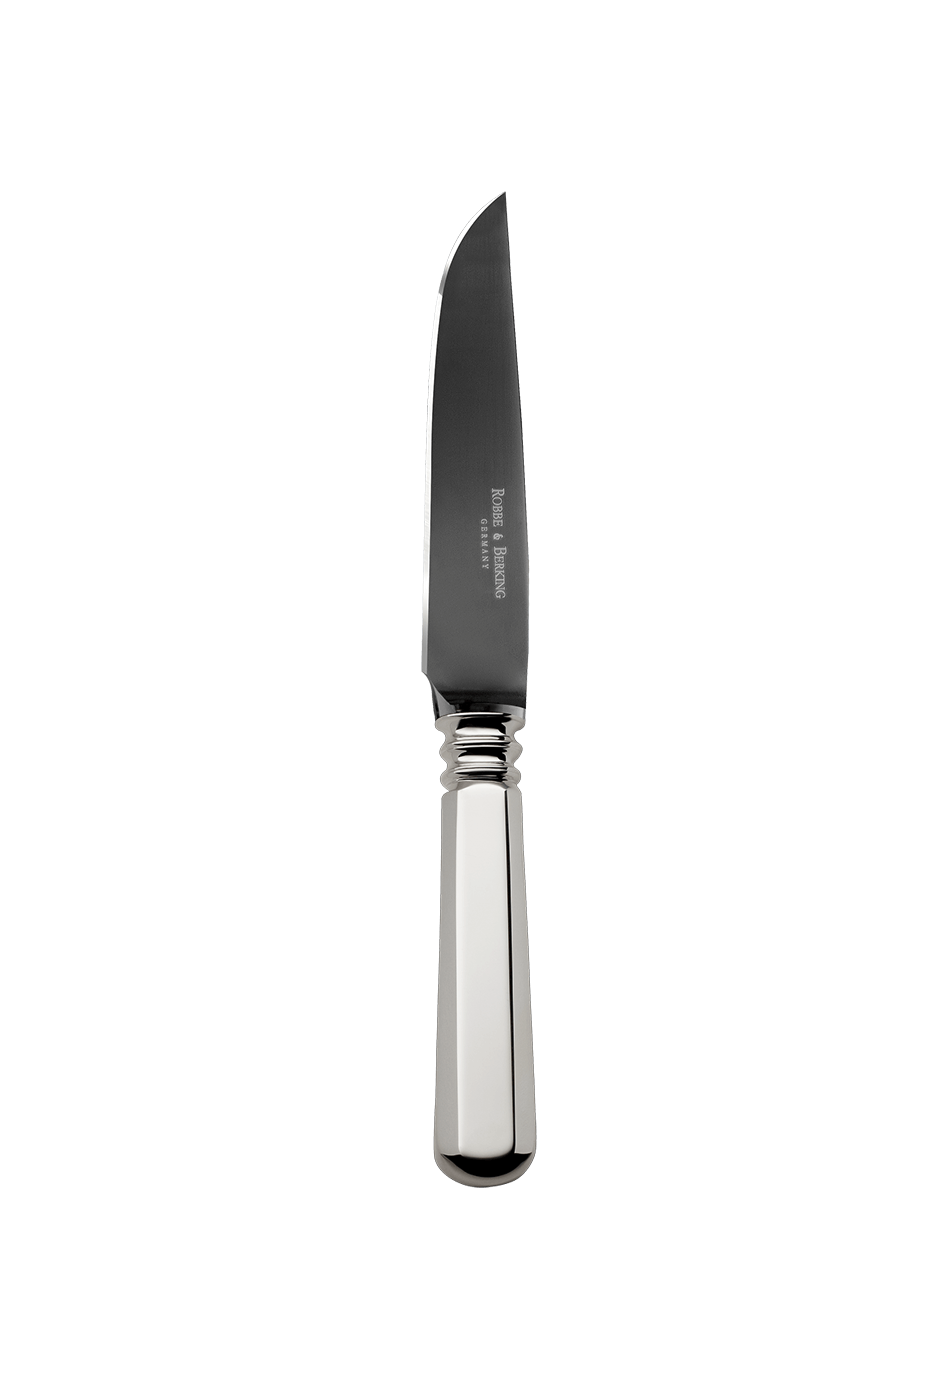 Alt-Spaten Steak Knife Frozen Black (925 Sterling Silver)